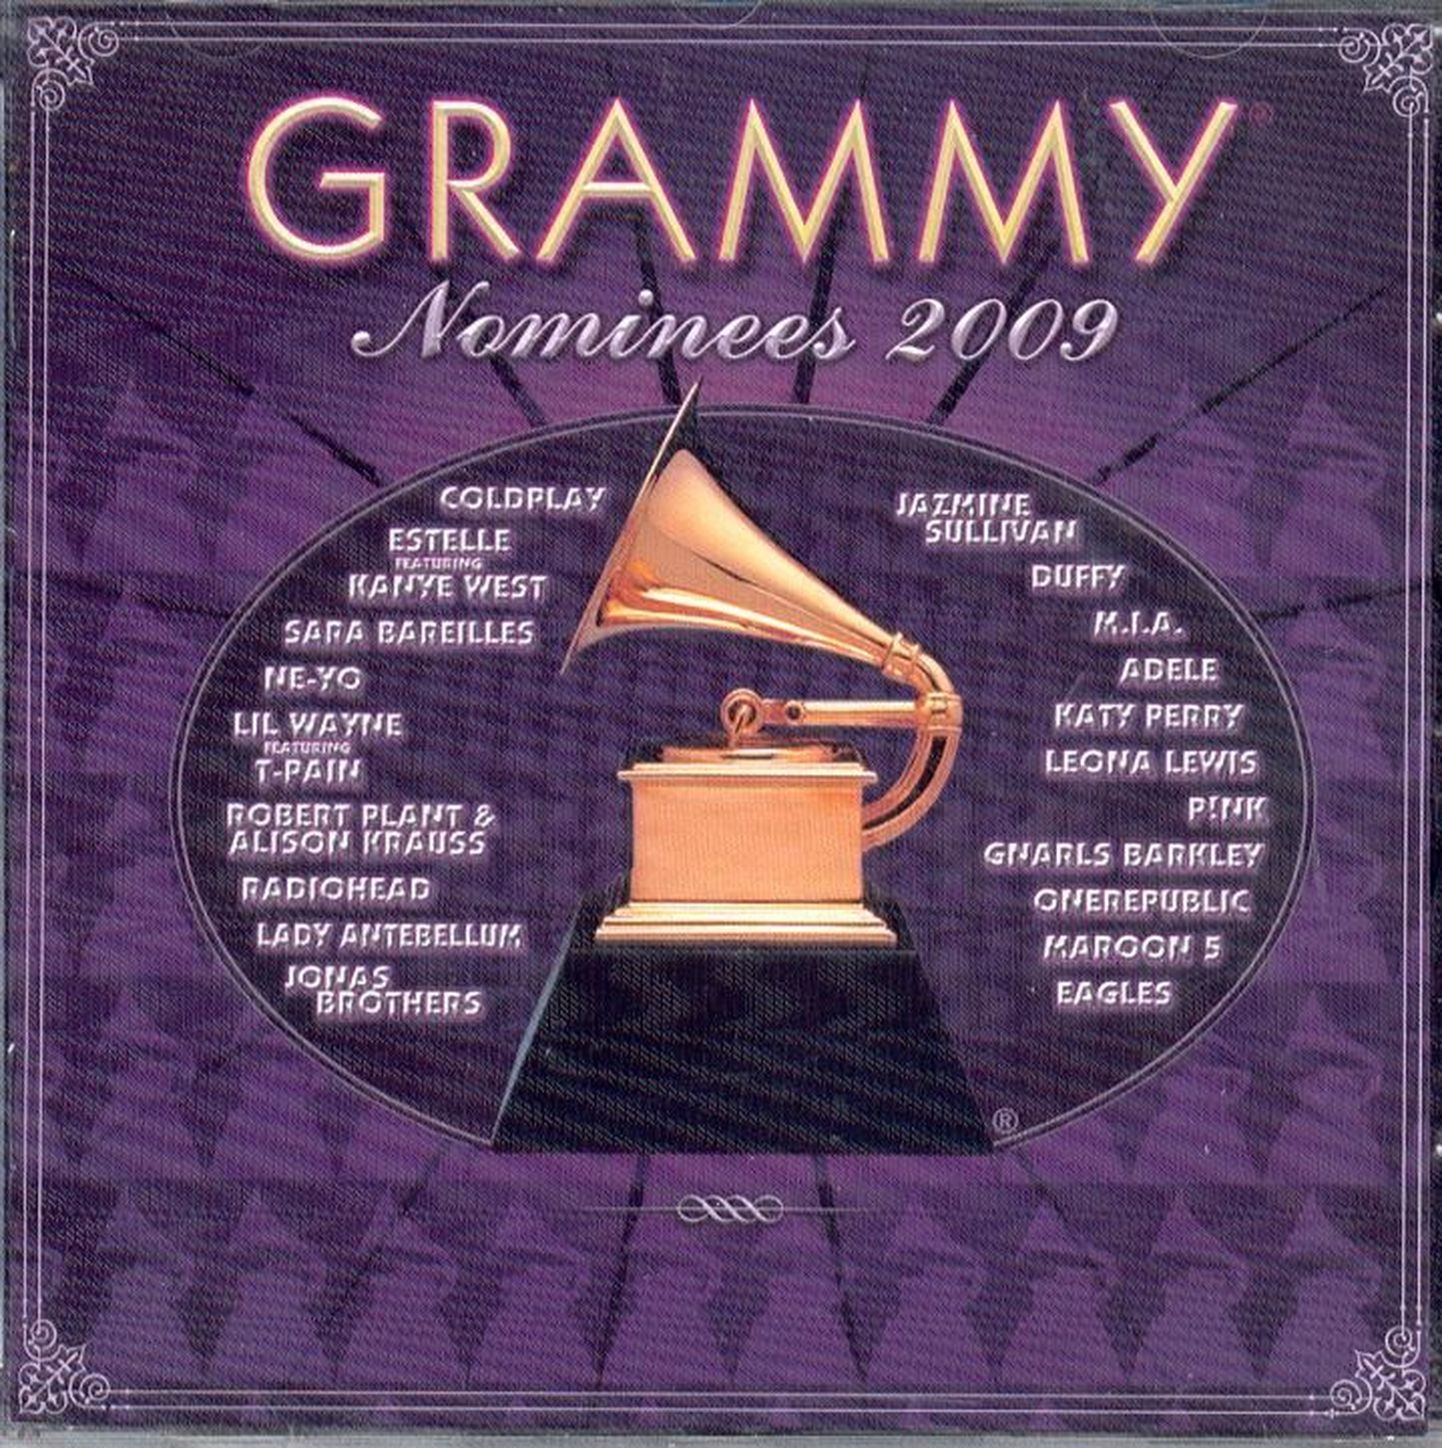 “Grammy Nominees 2009”.